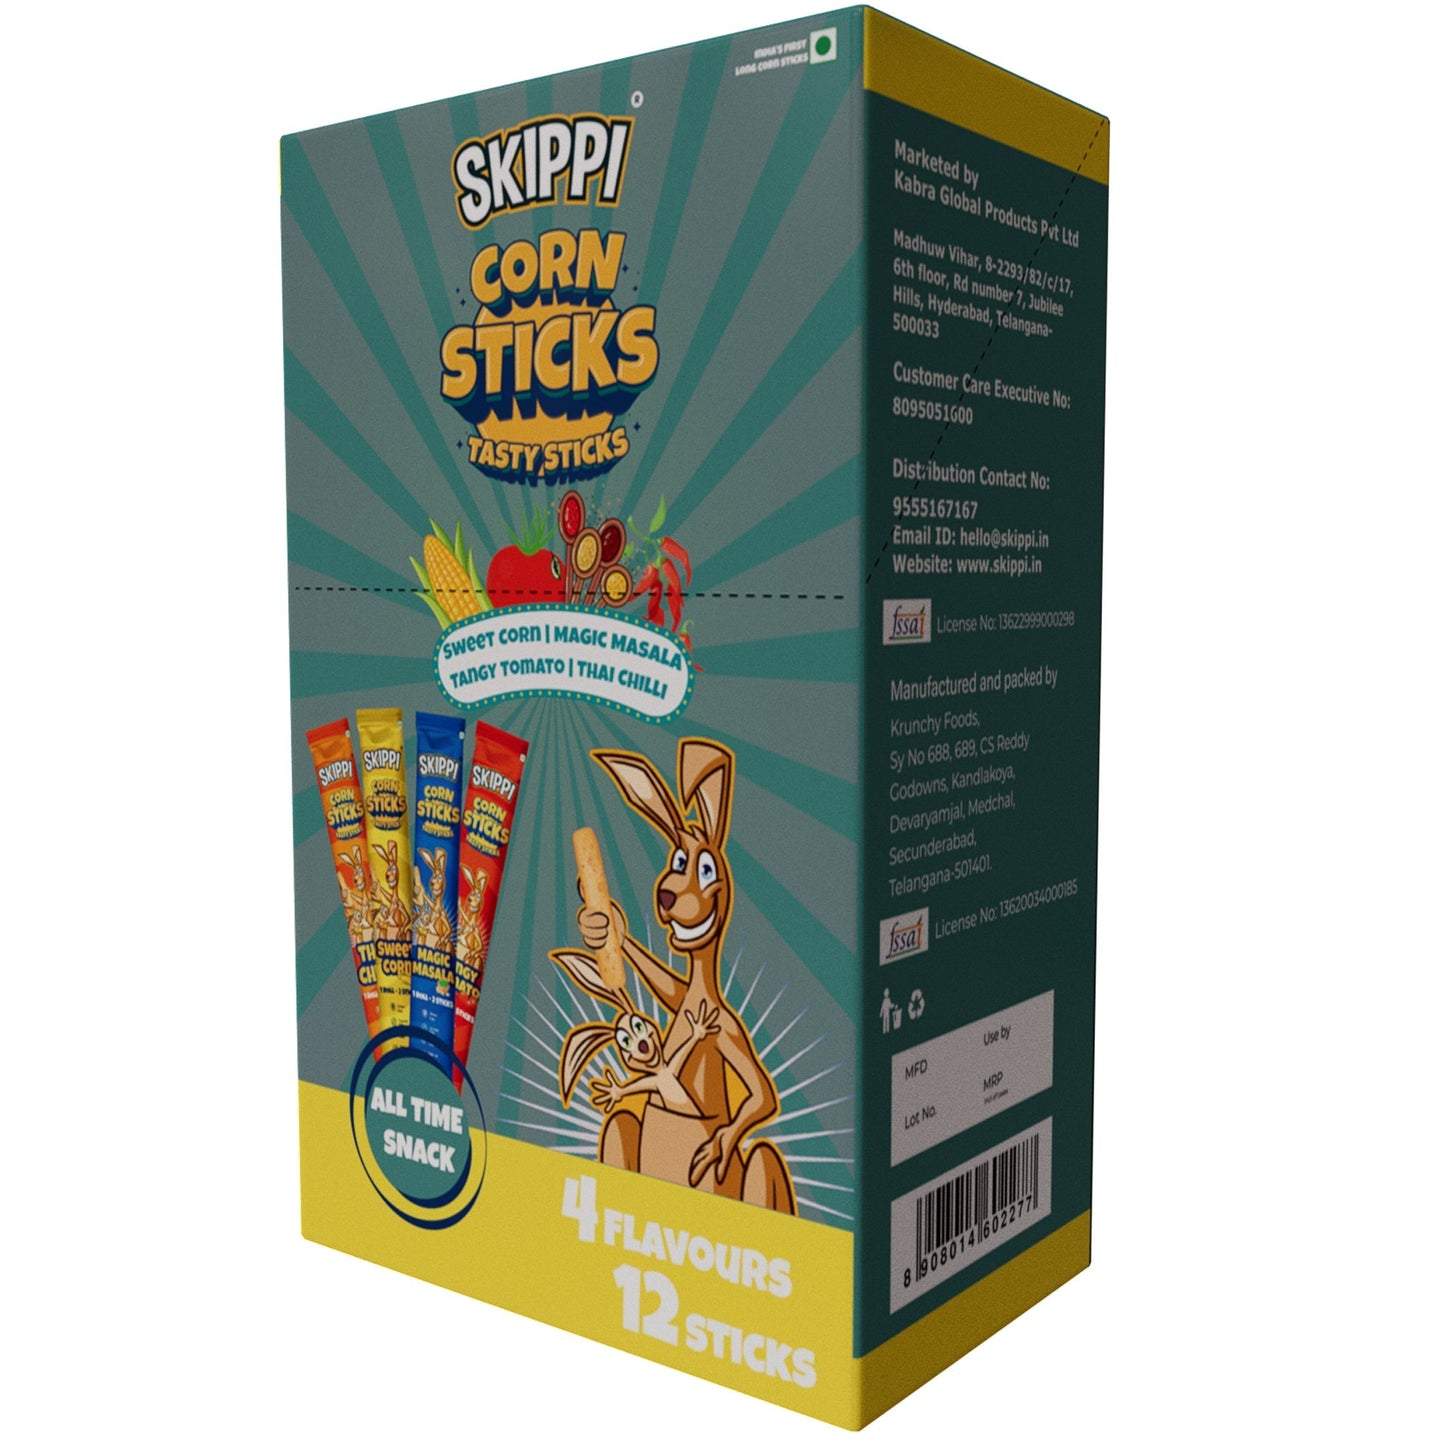 A All Flavor Box + Corn Sticks Combo - Skippi Ice Pops